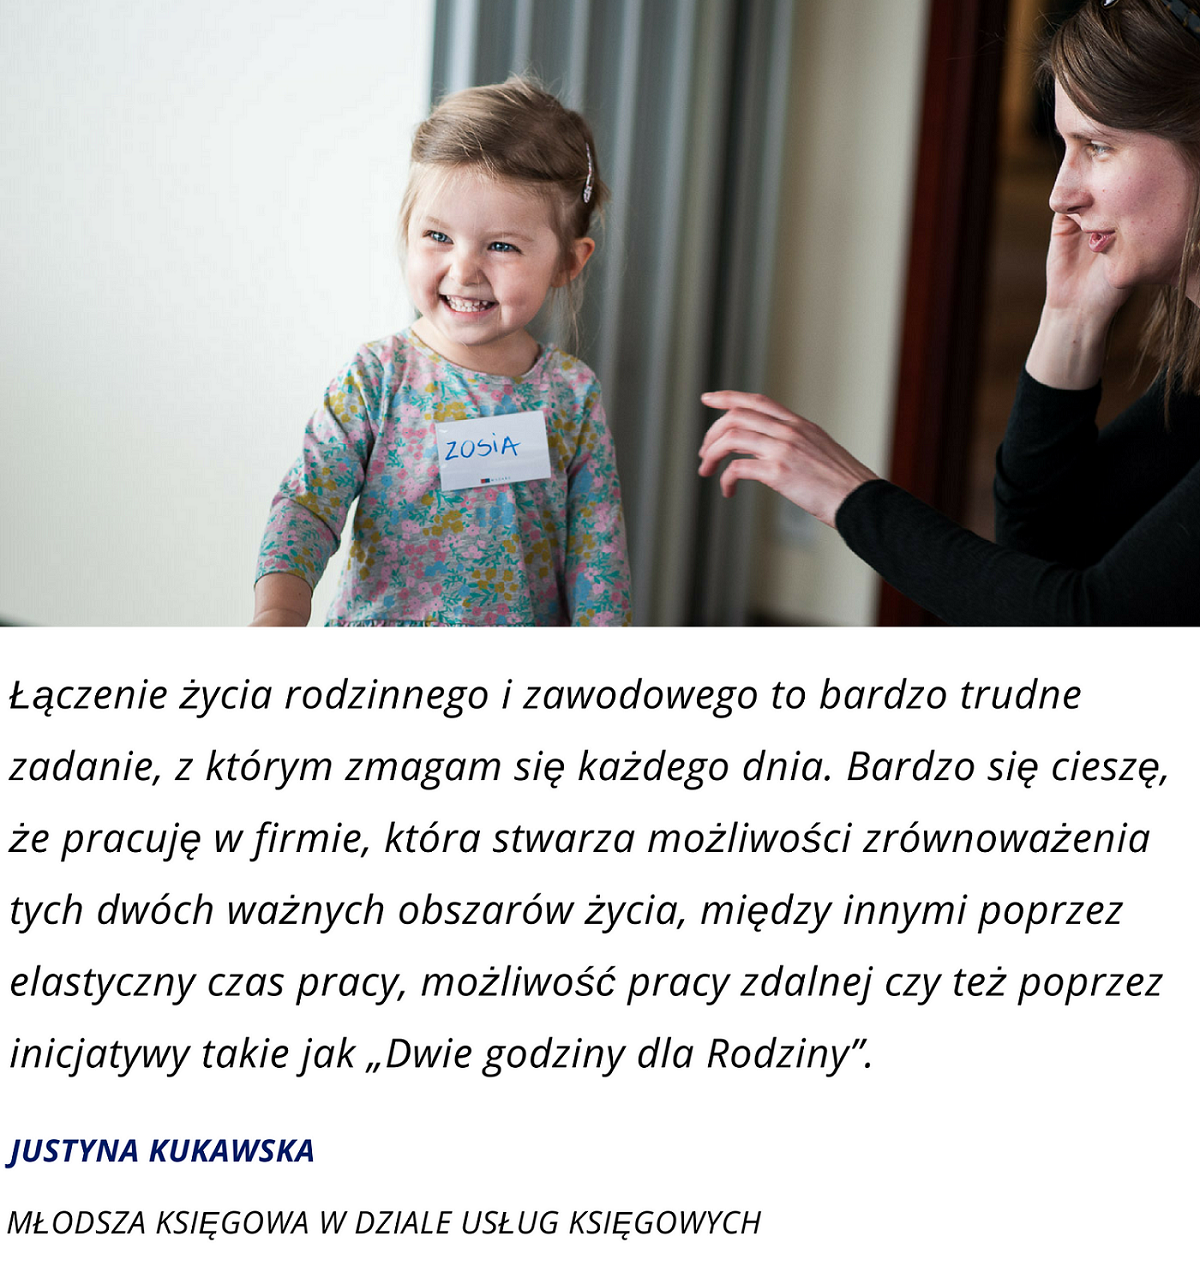 Kukawska Justyna